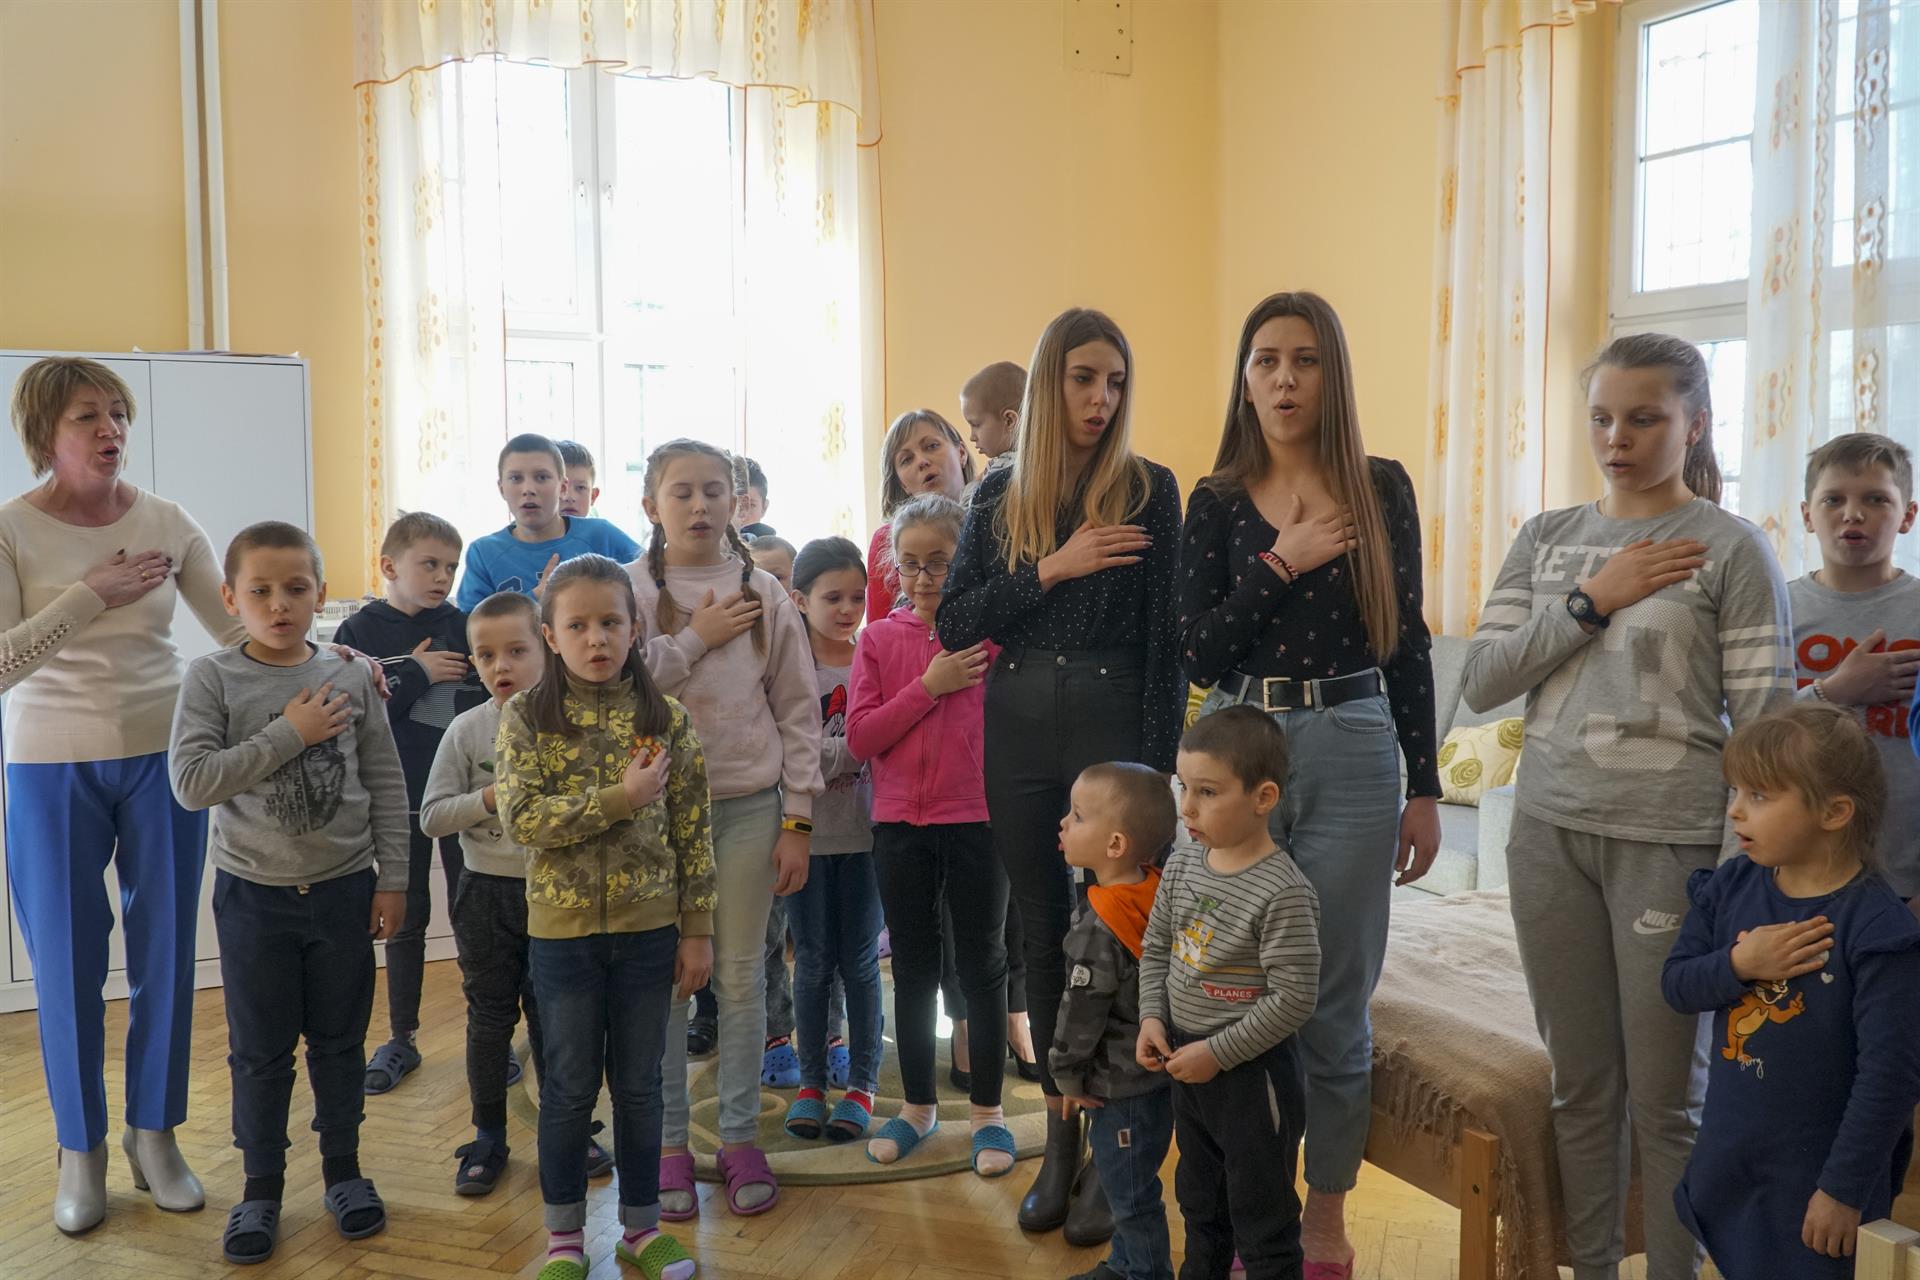 La huida disfrazada de juego de los niños de un orfanato de Ucrania